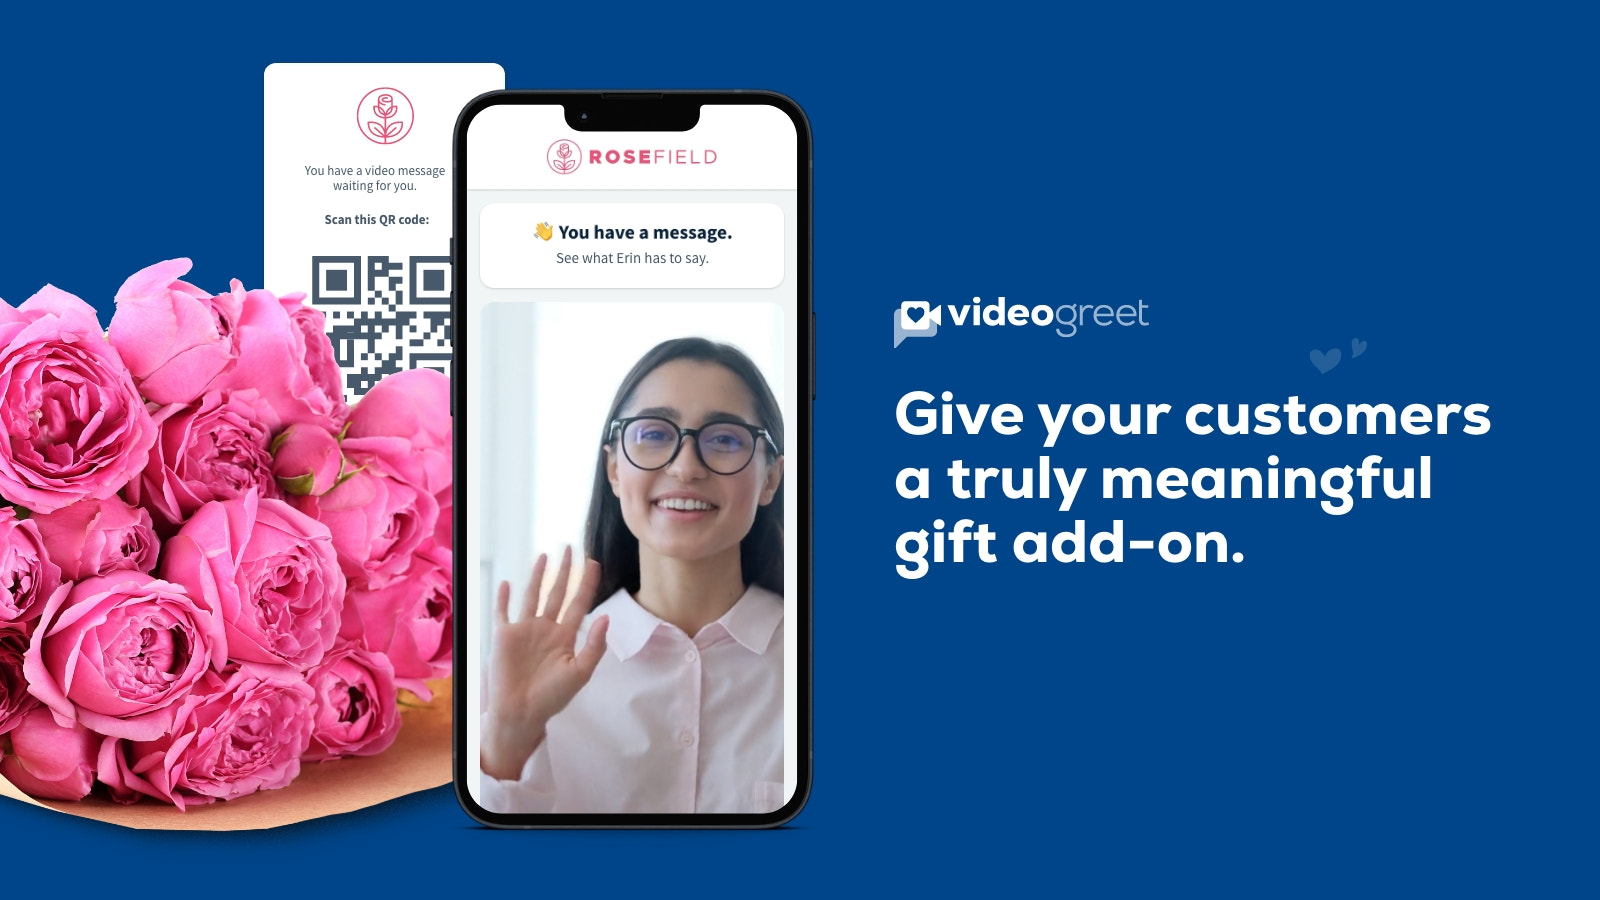 Permita que los clientes agreguen saludos en video a los pedidos como un complemento de regalo.